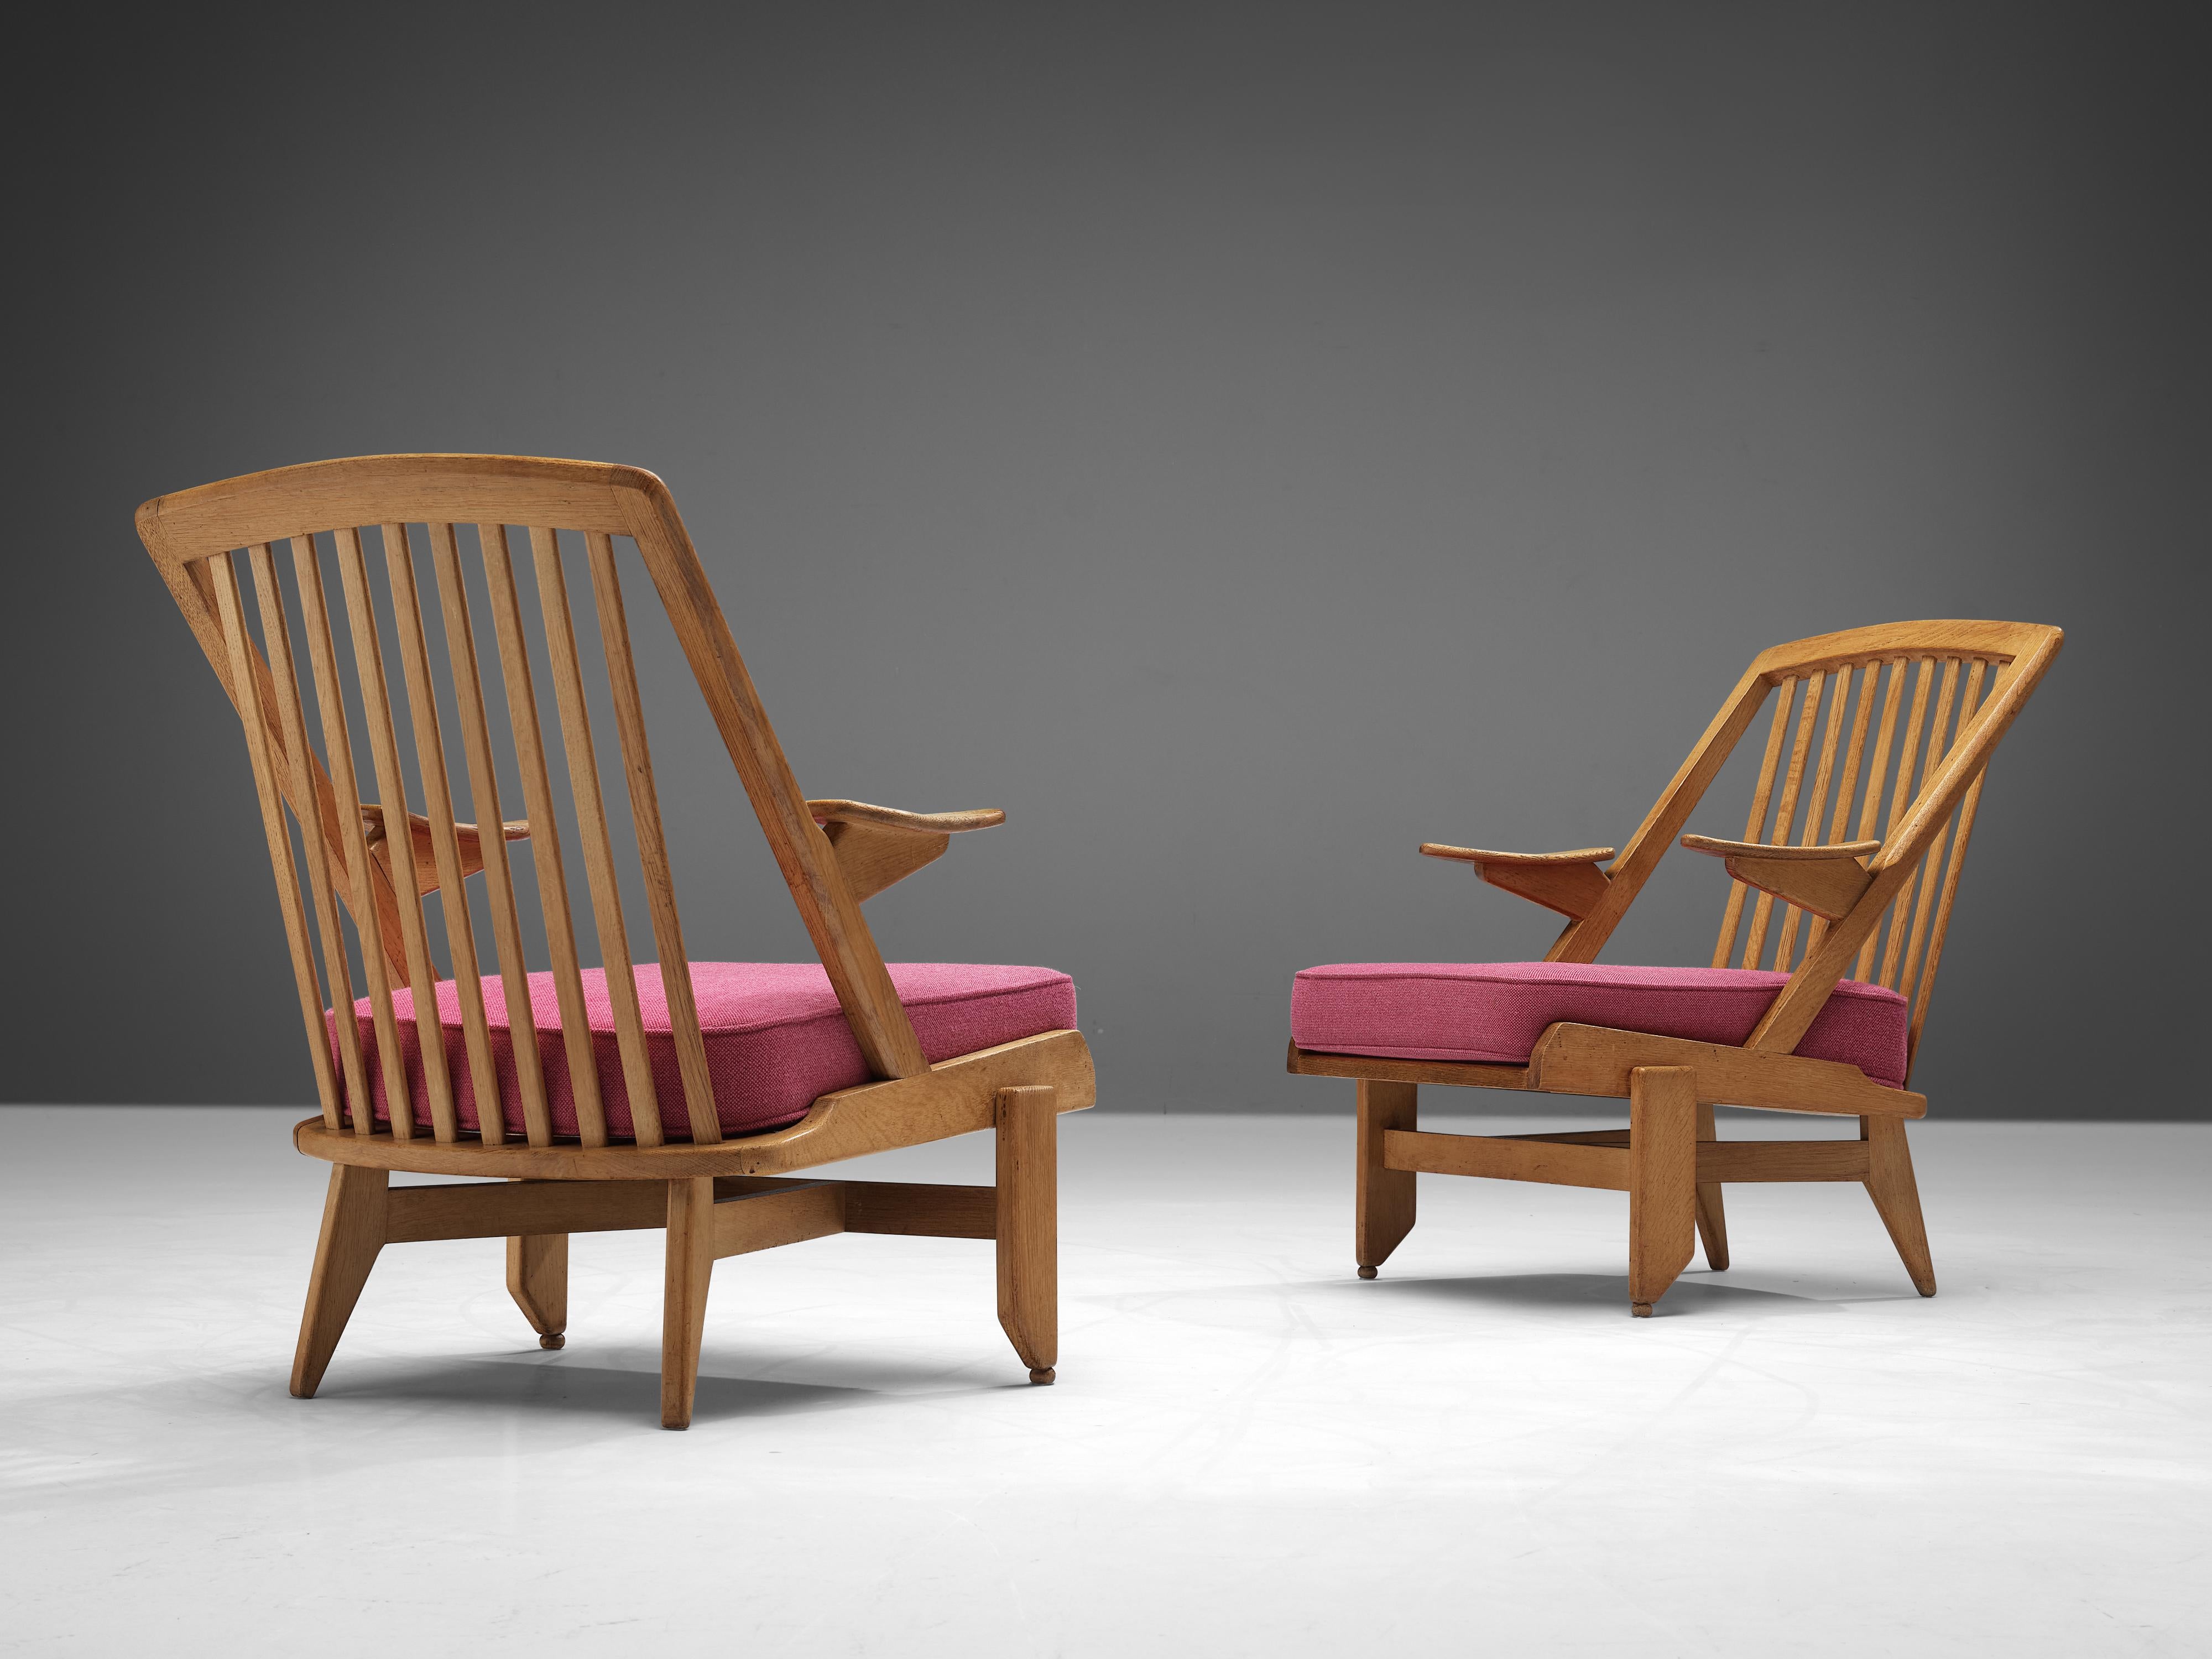 Guillerme et Chambron, paire de chaises longues, tissu rose, chêne, France, années 60

Ce duo de designers français est connu pour ses meubles en chêne massif de très haute qualité, dont cet ensemble est un autre bel exemple. Ces chaises ont une